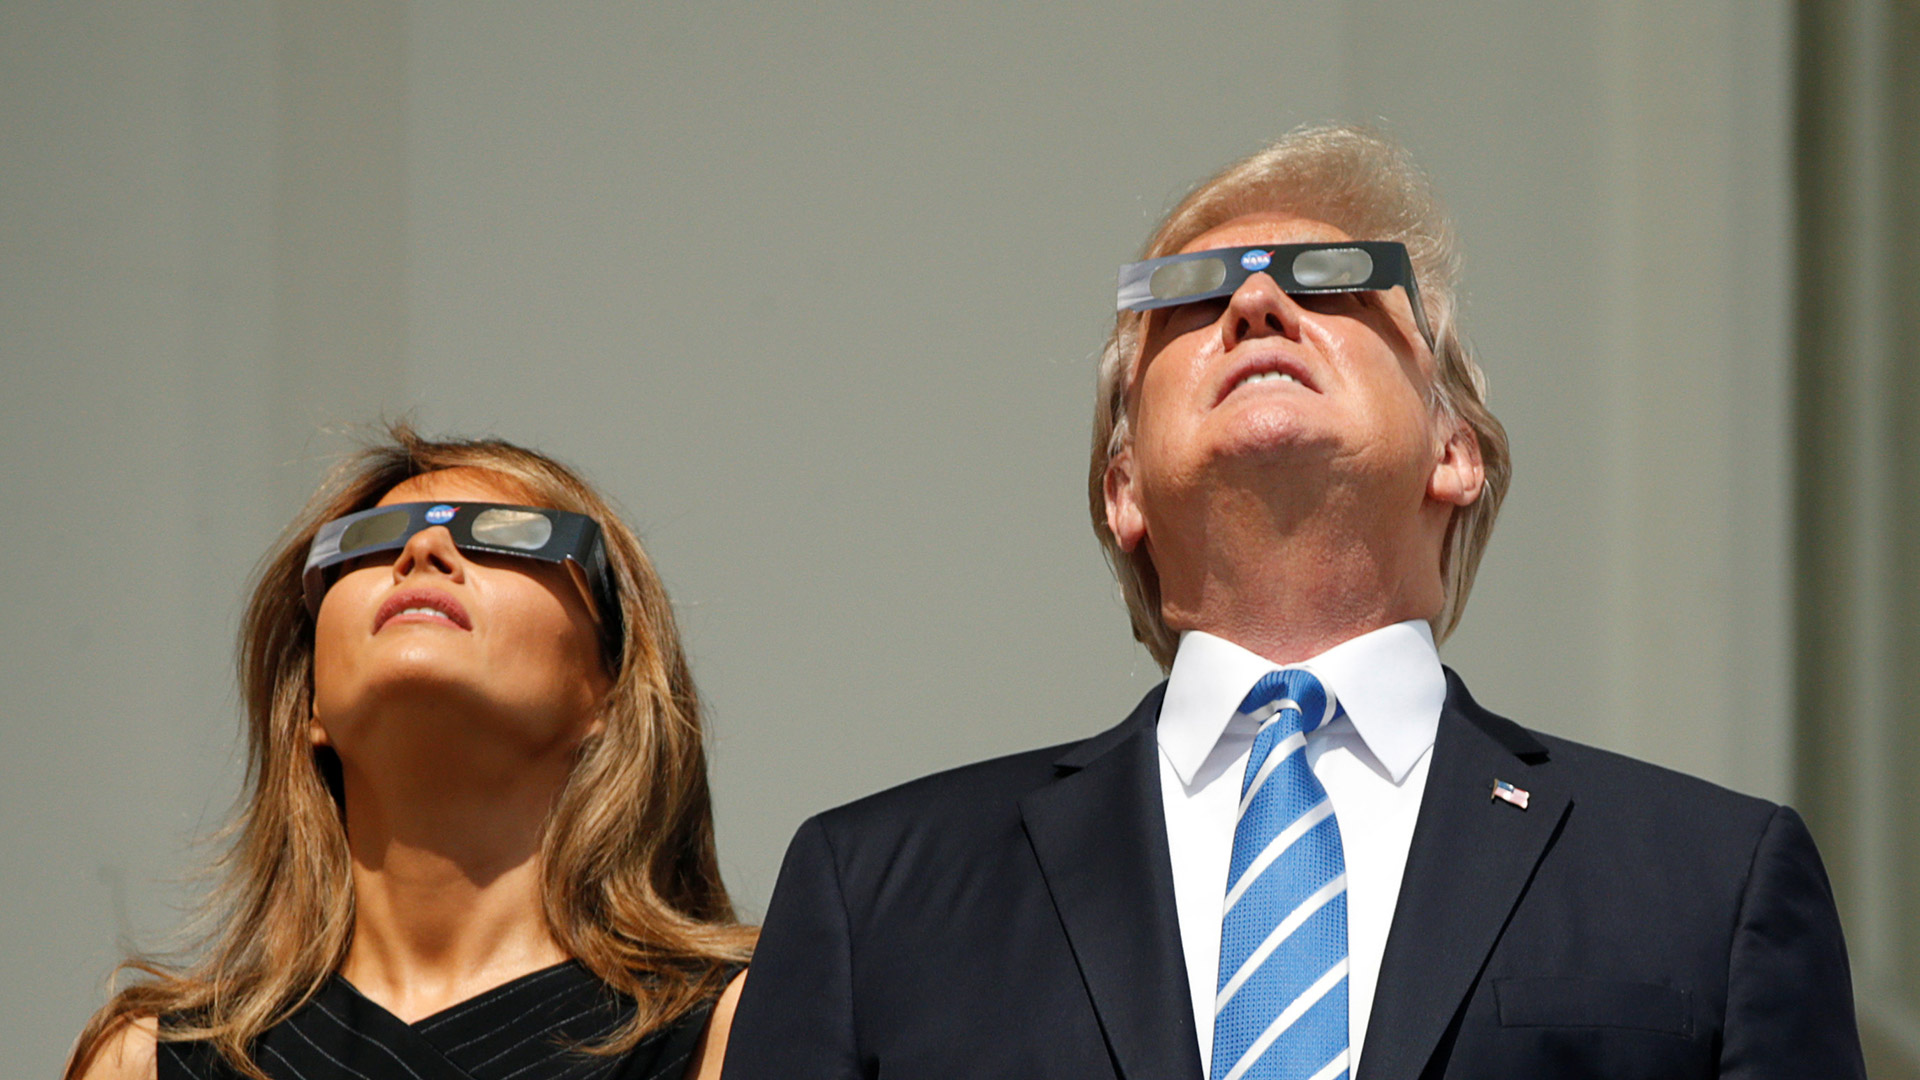 Estas son las mejores imágenes del eclipse solar de 2017 9